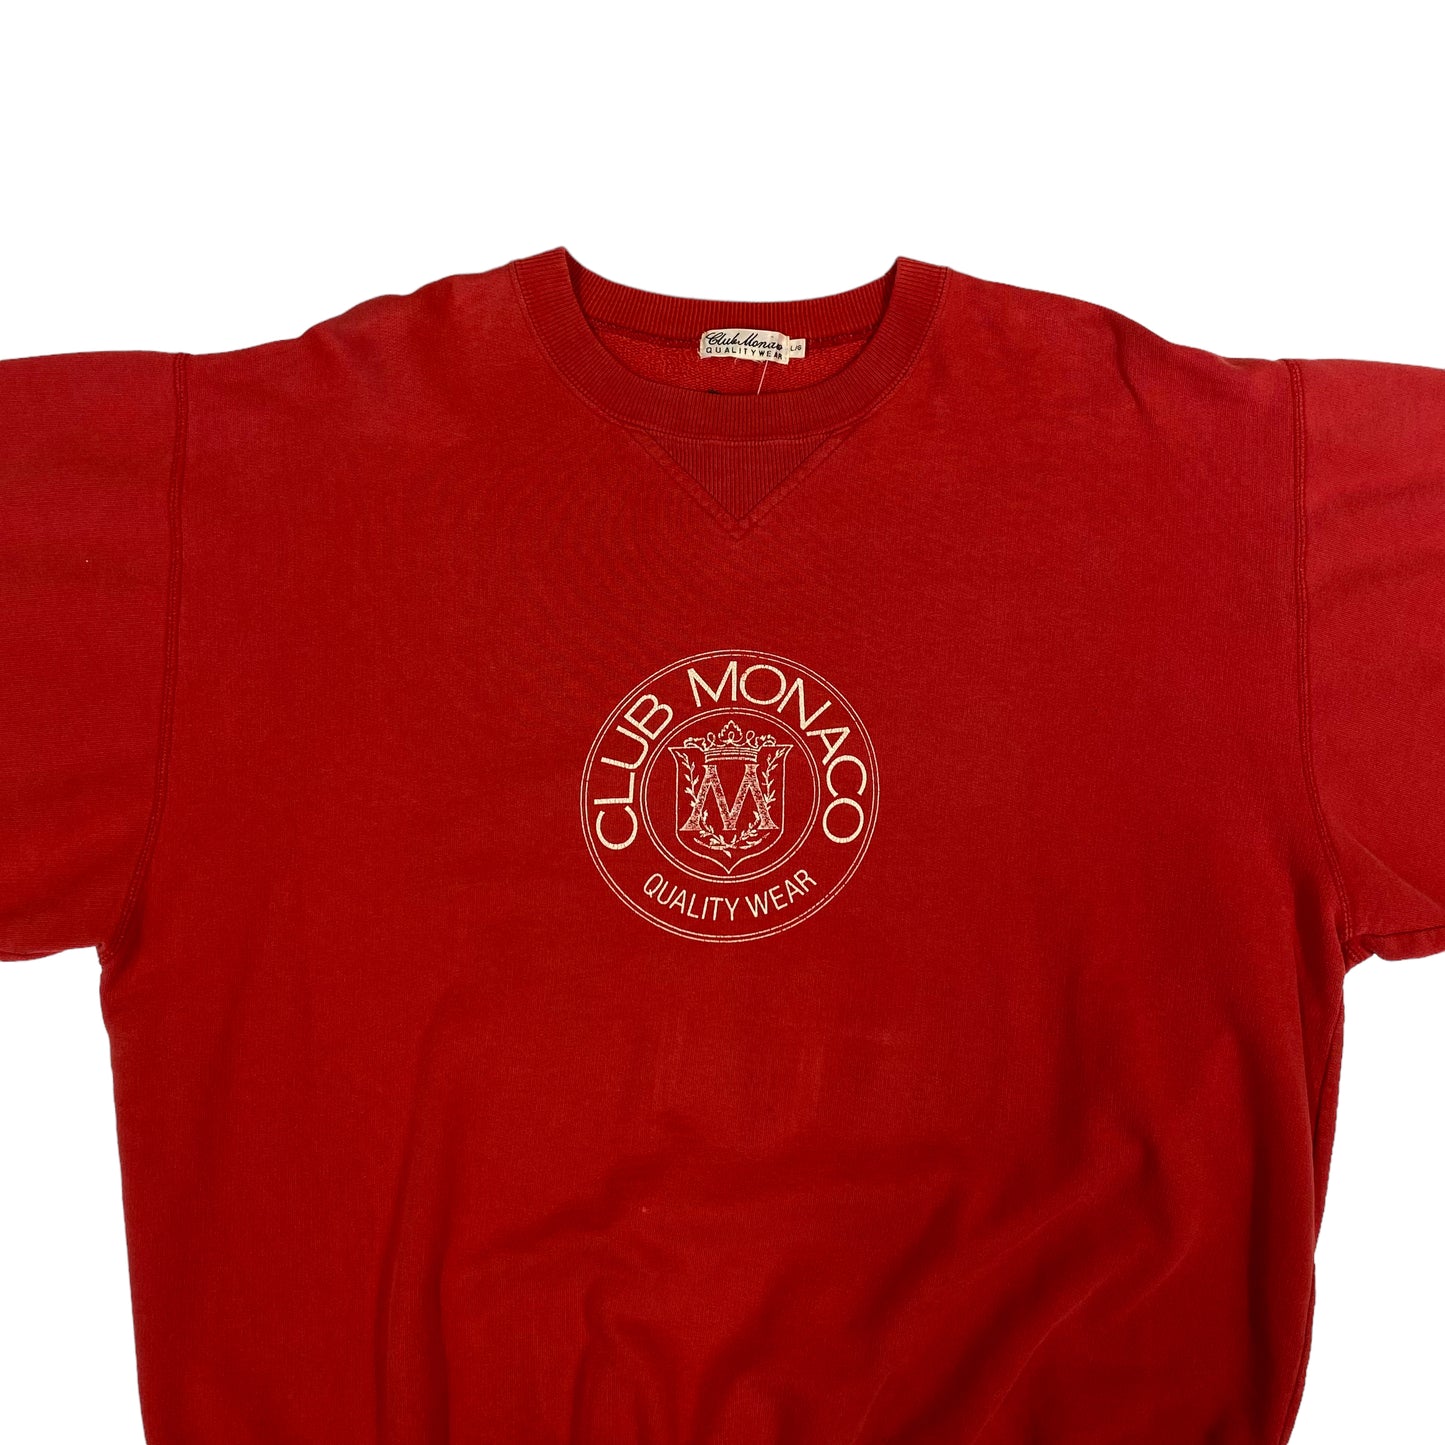 90’s Club Monaco Crewneck Red Sz L (A2039)